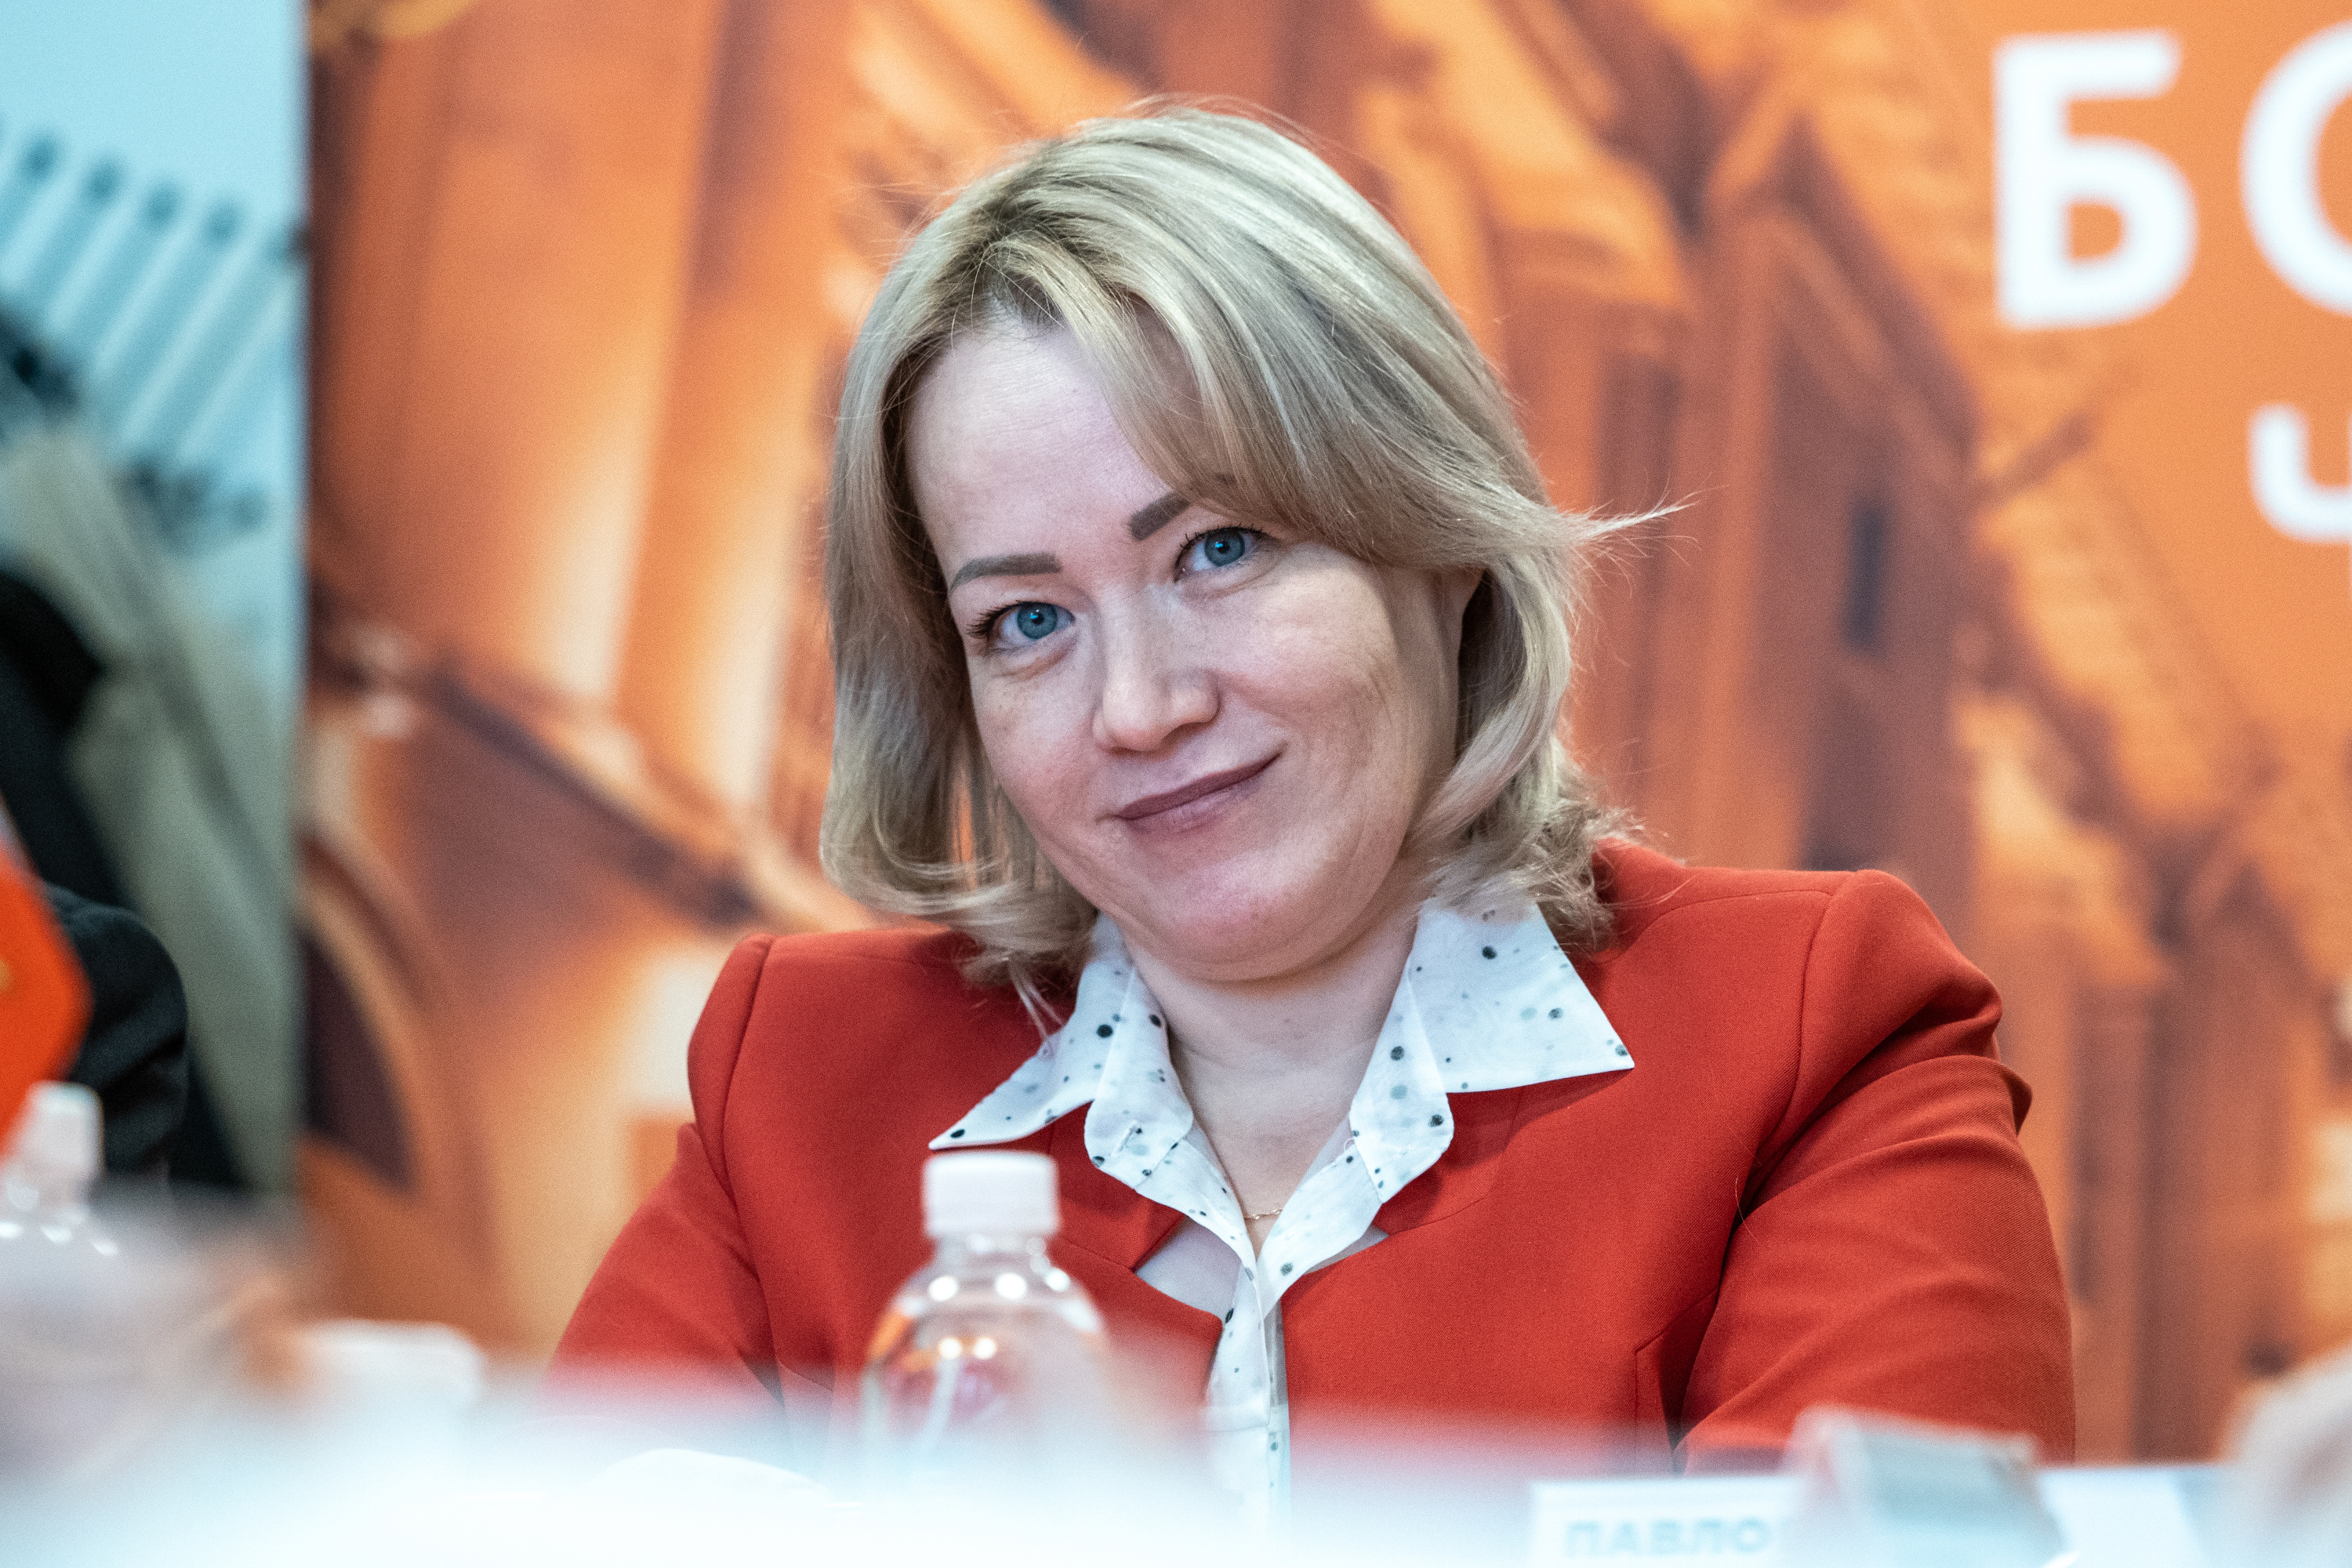 Римма Галлямова, заместитель генерального директора по управлению персоналом и административным вопросам АО «Балтийский завод»